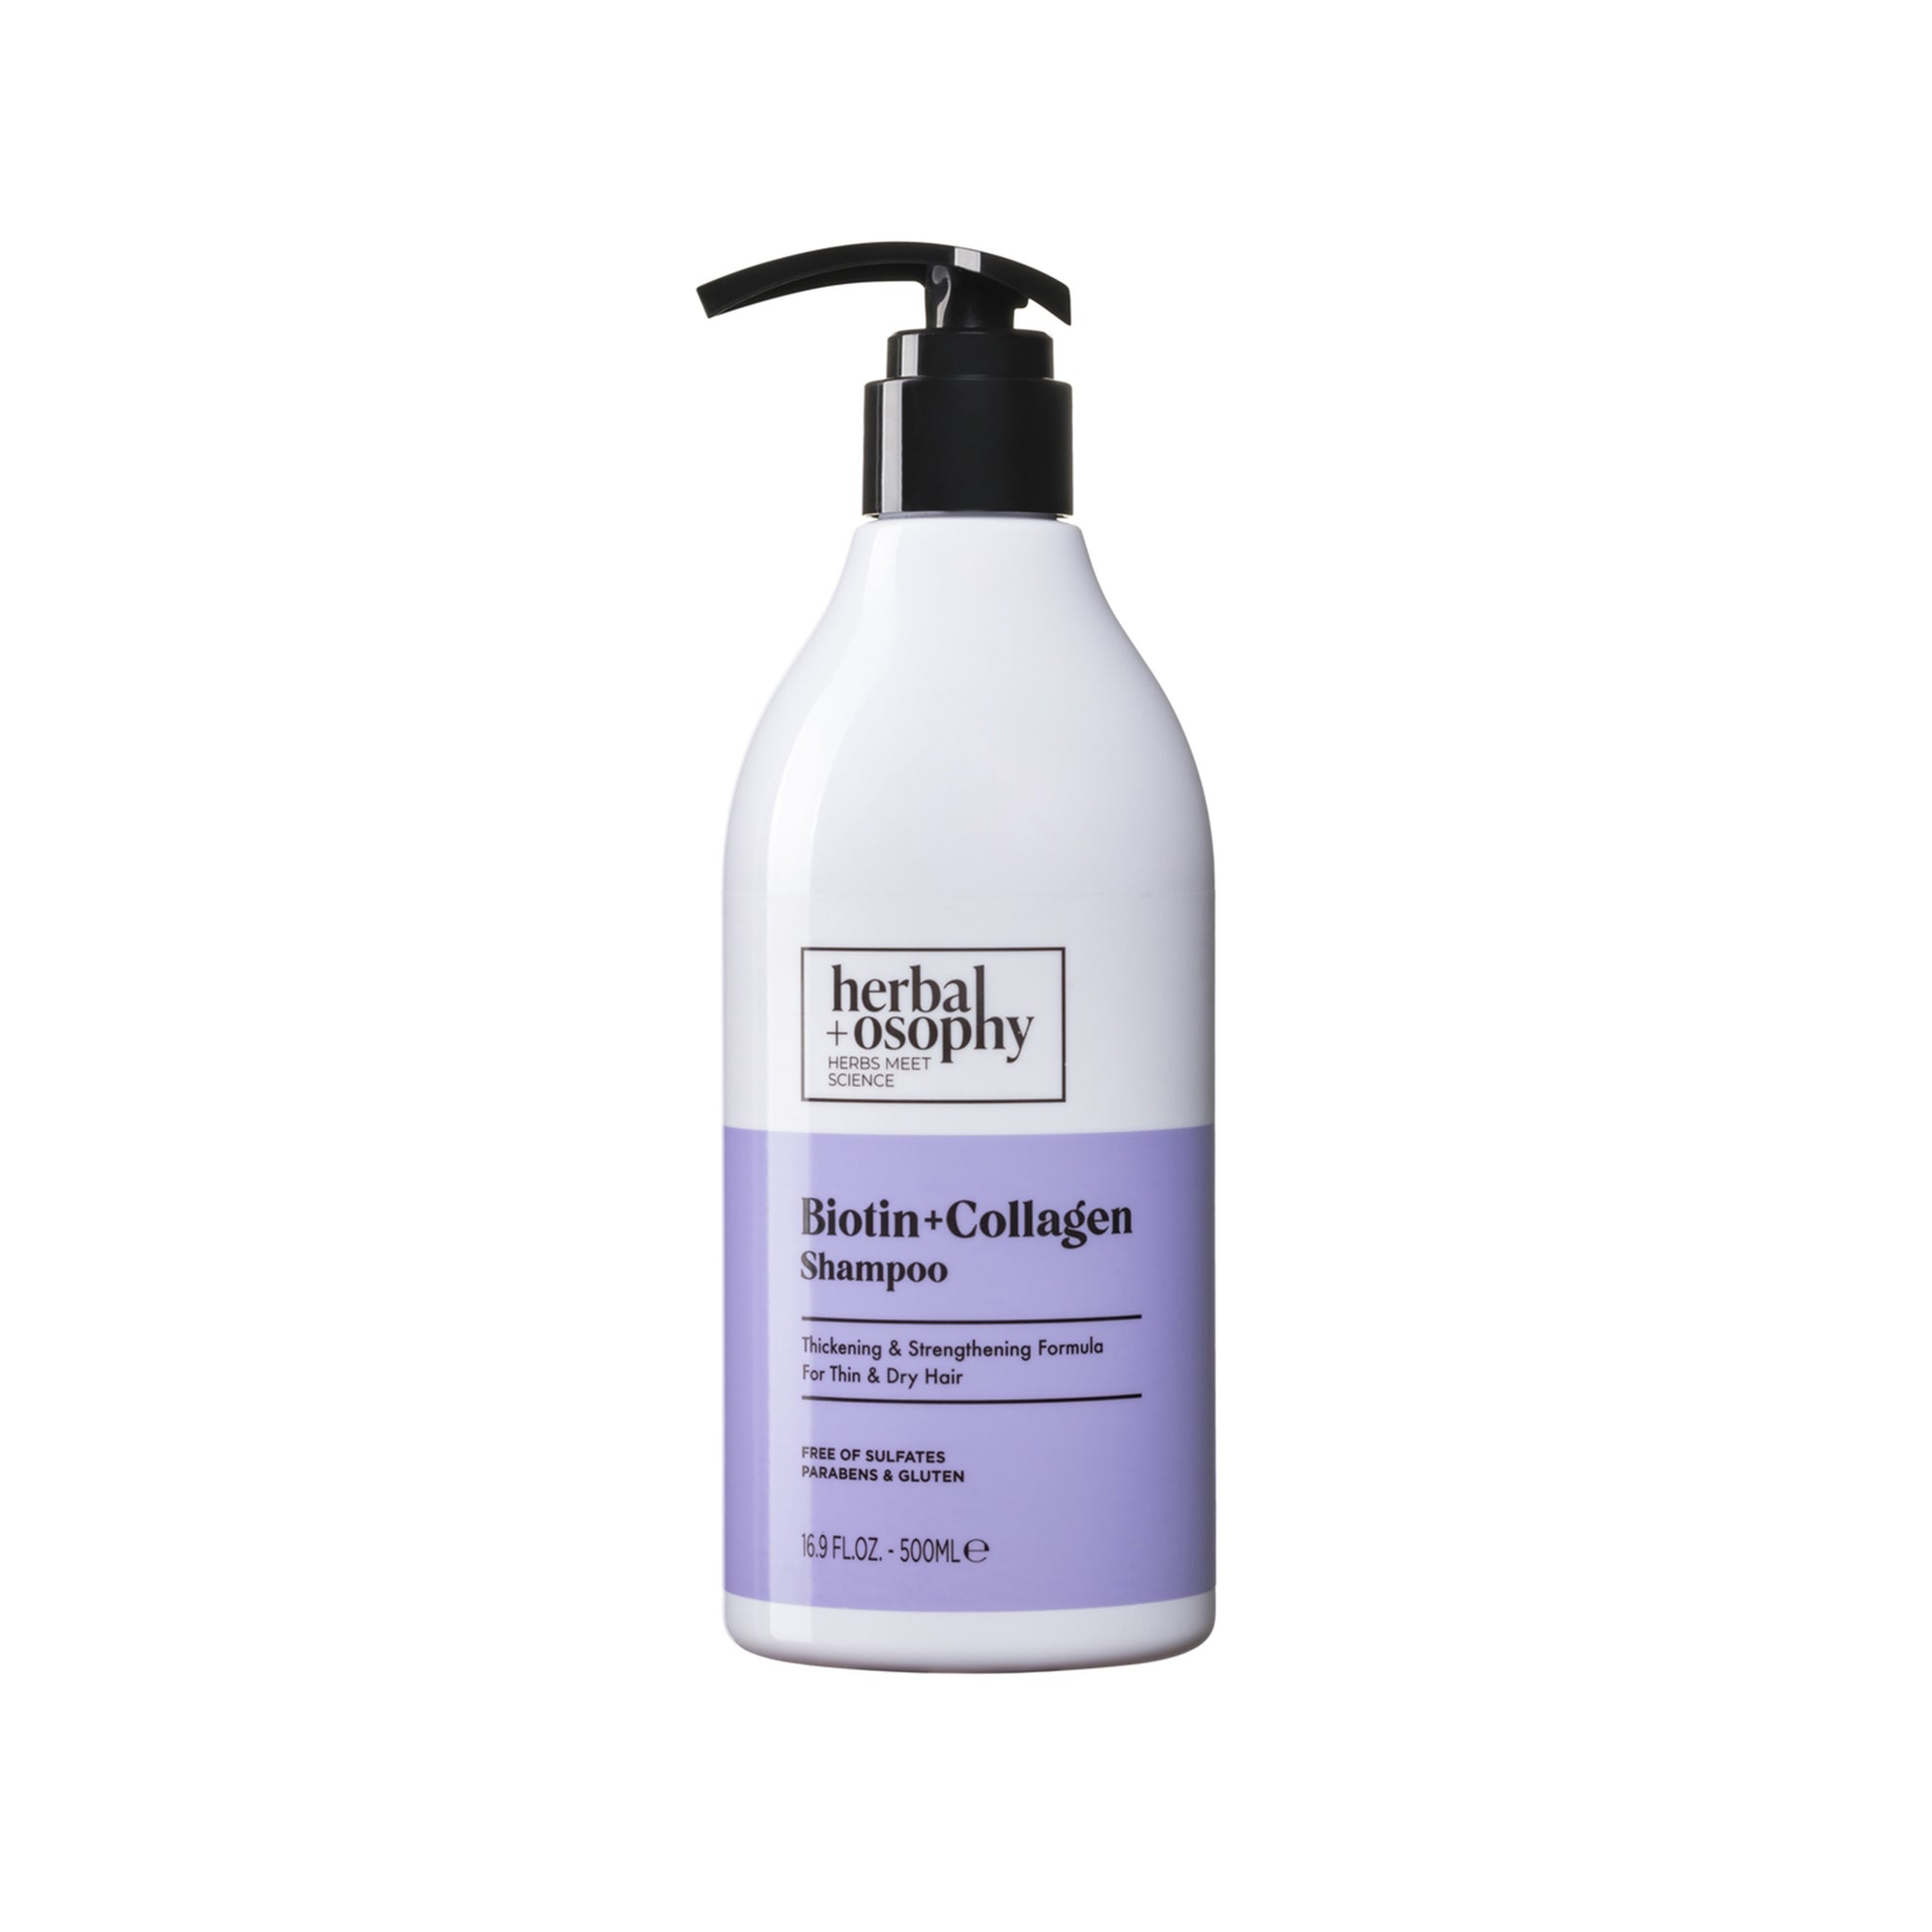 Biotin + Collagen Shampoo bottle front